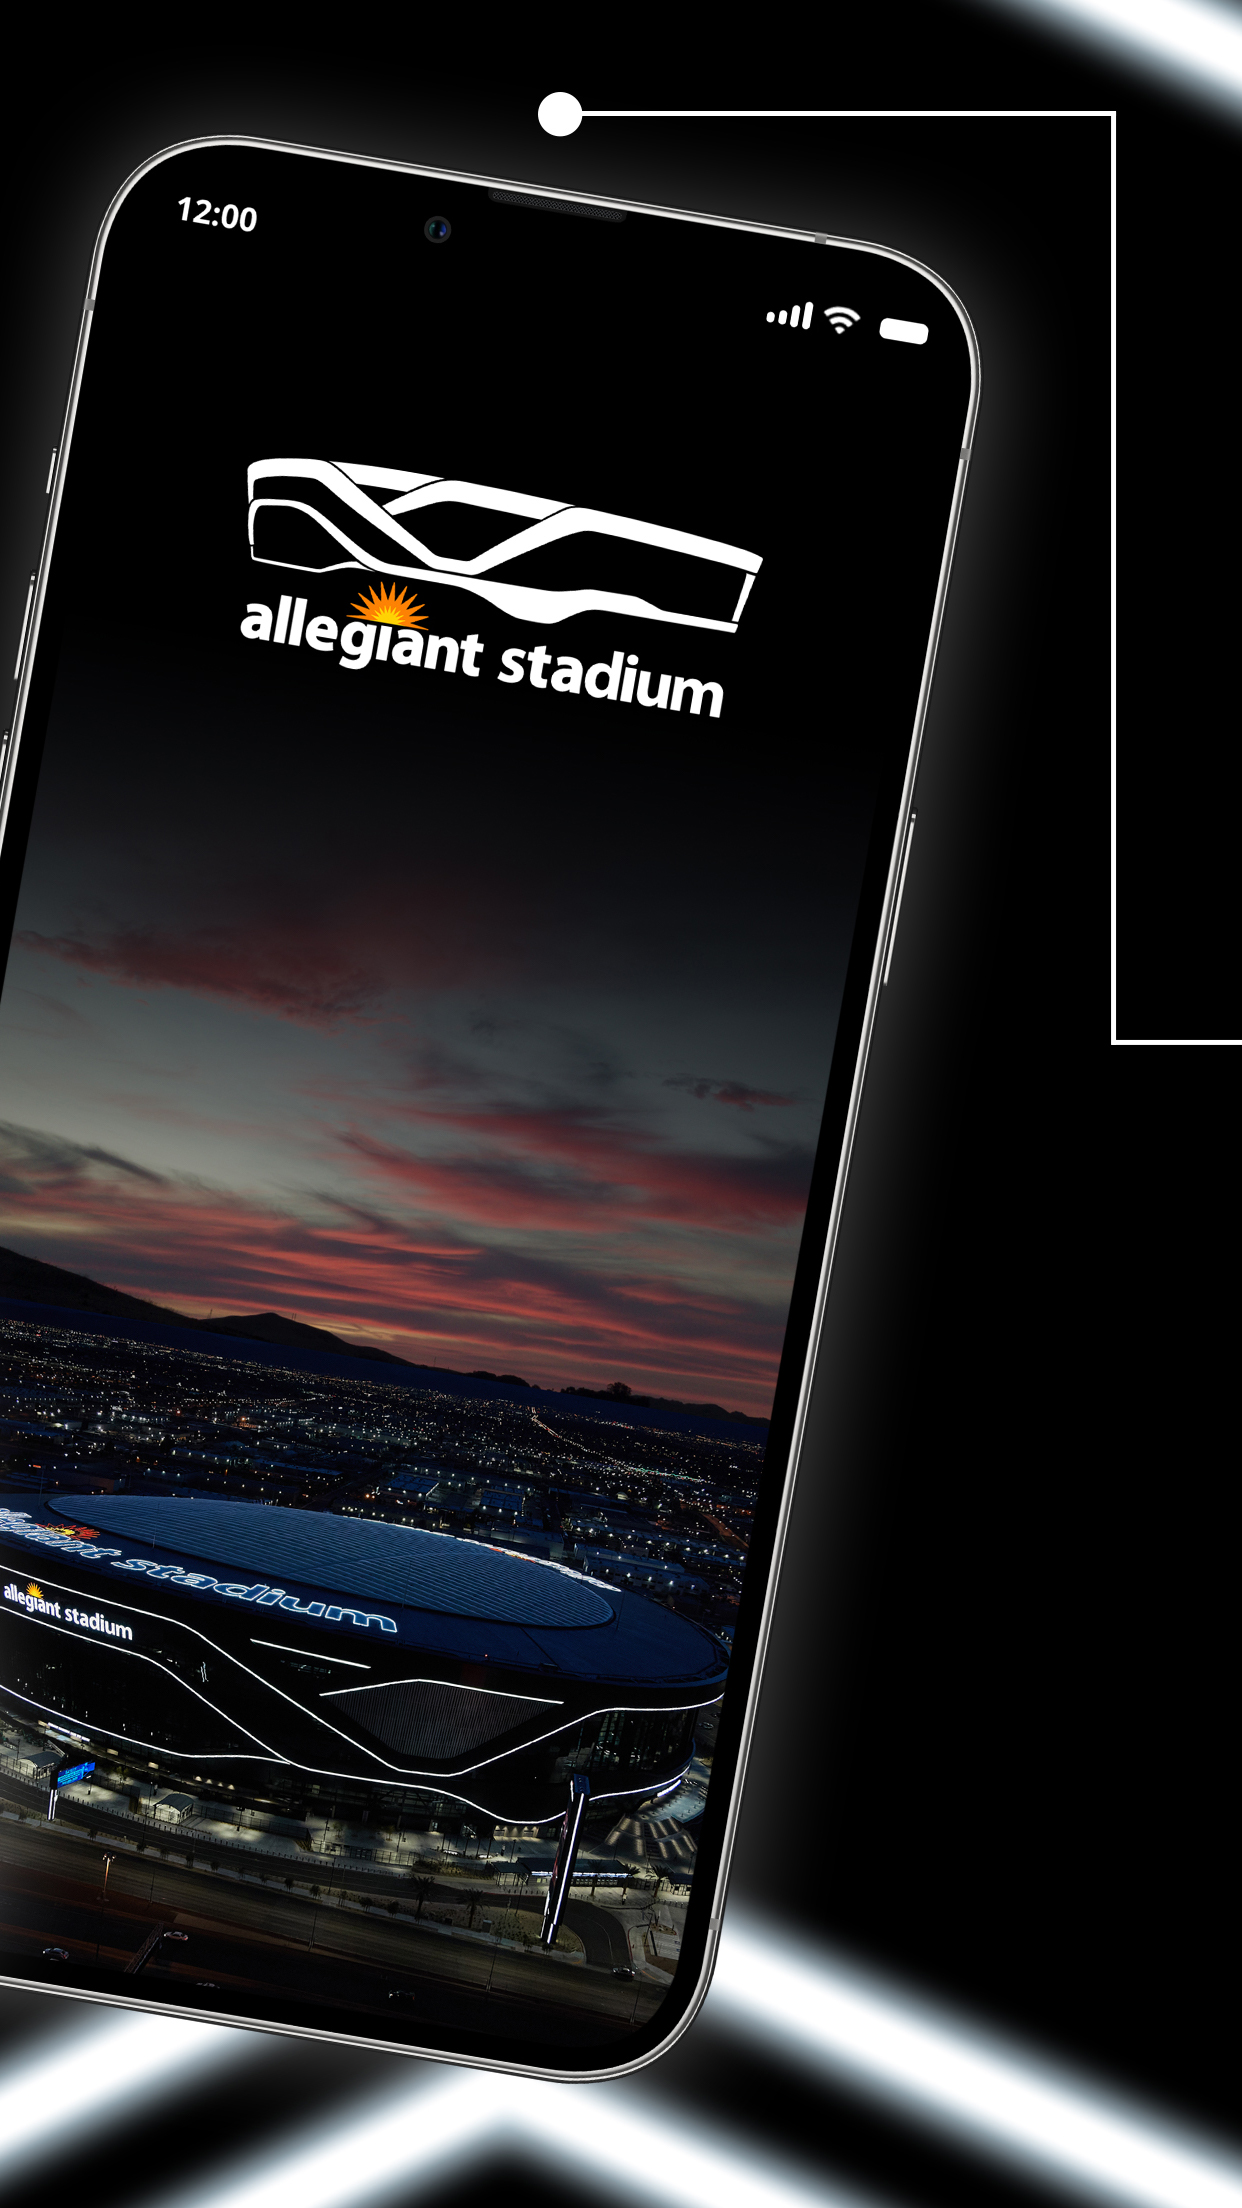 Android application Raiders + Allegiant Stadium screenshort